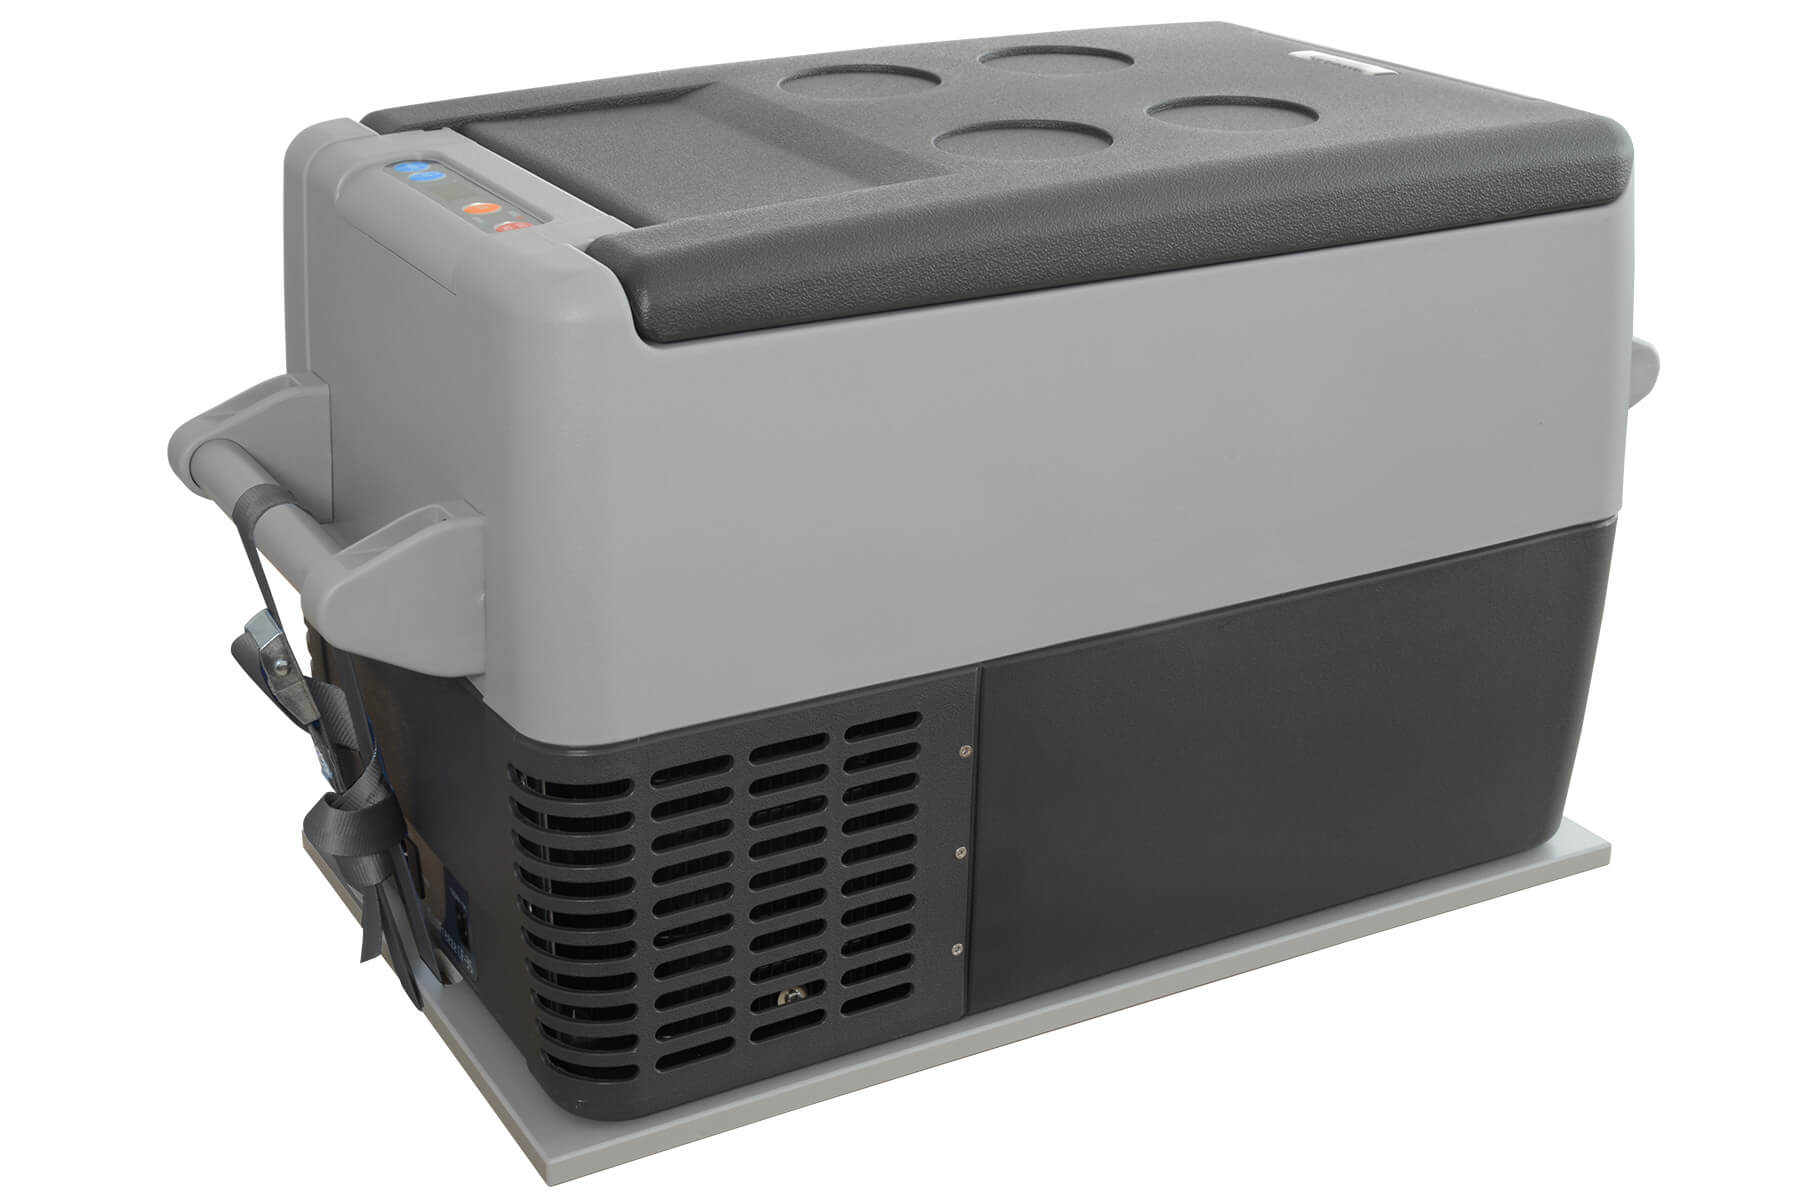 Kühlbox im Minicamper - Wohin mit der Dometic CDF-26? 